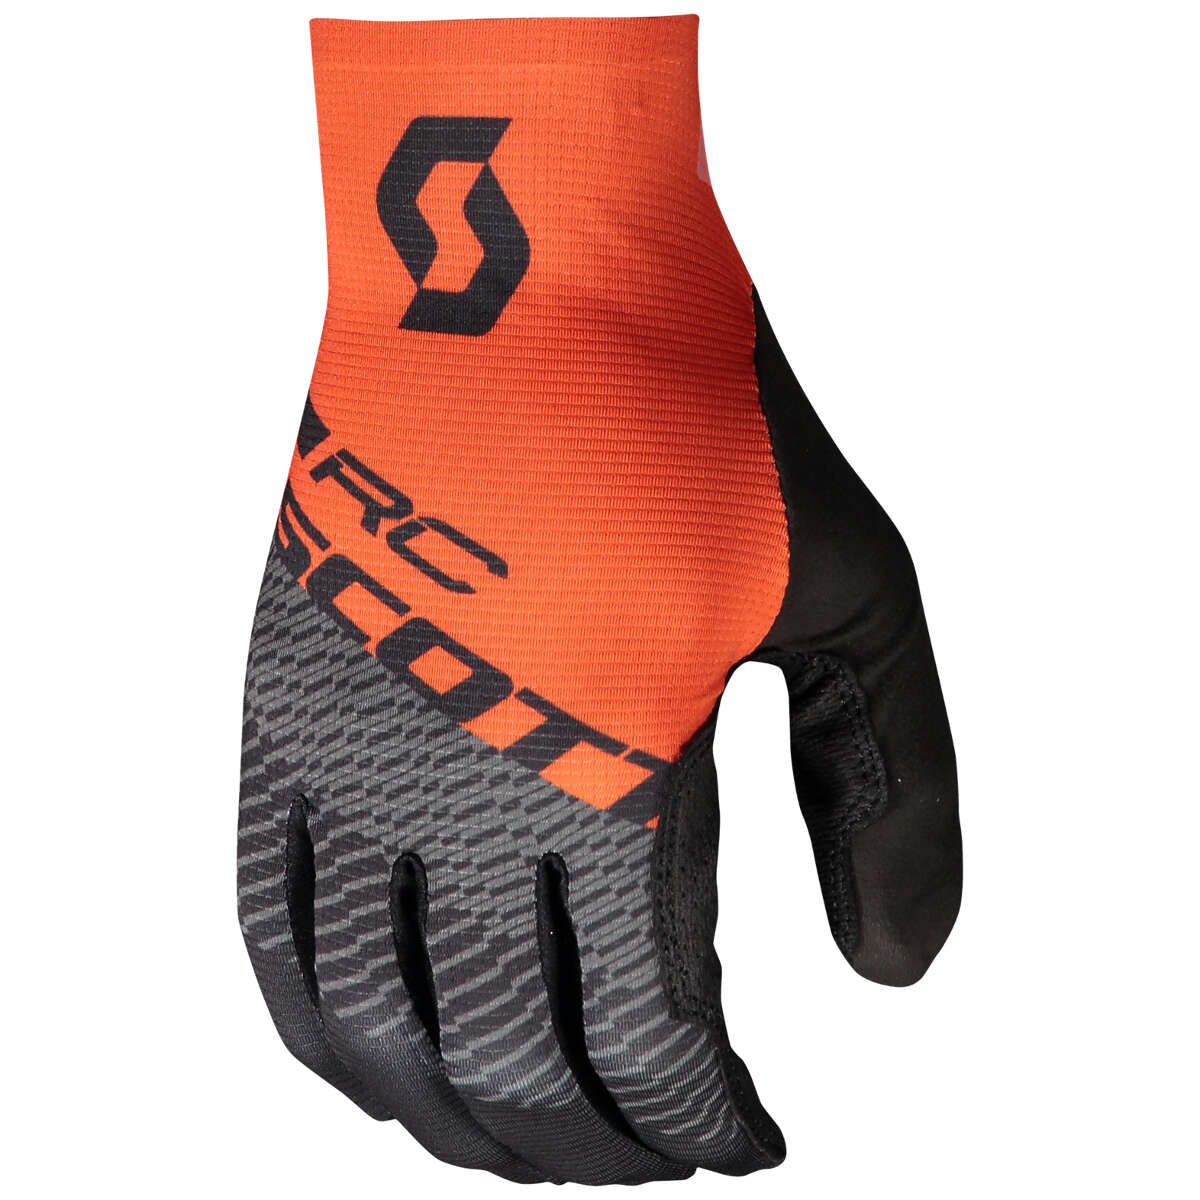 Scott Bike Gloves RC Pro Schwarz/Tangerine Orange